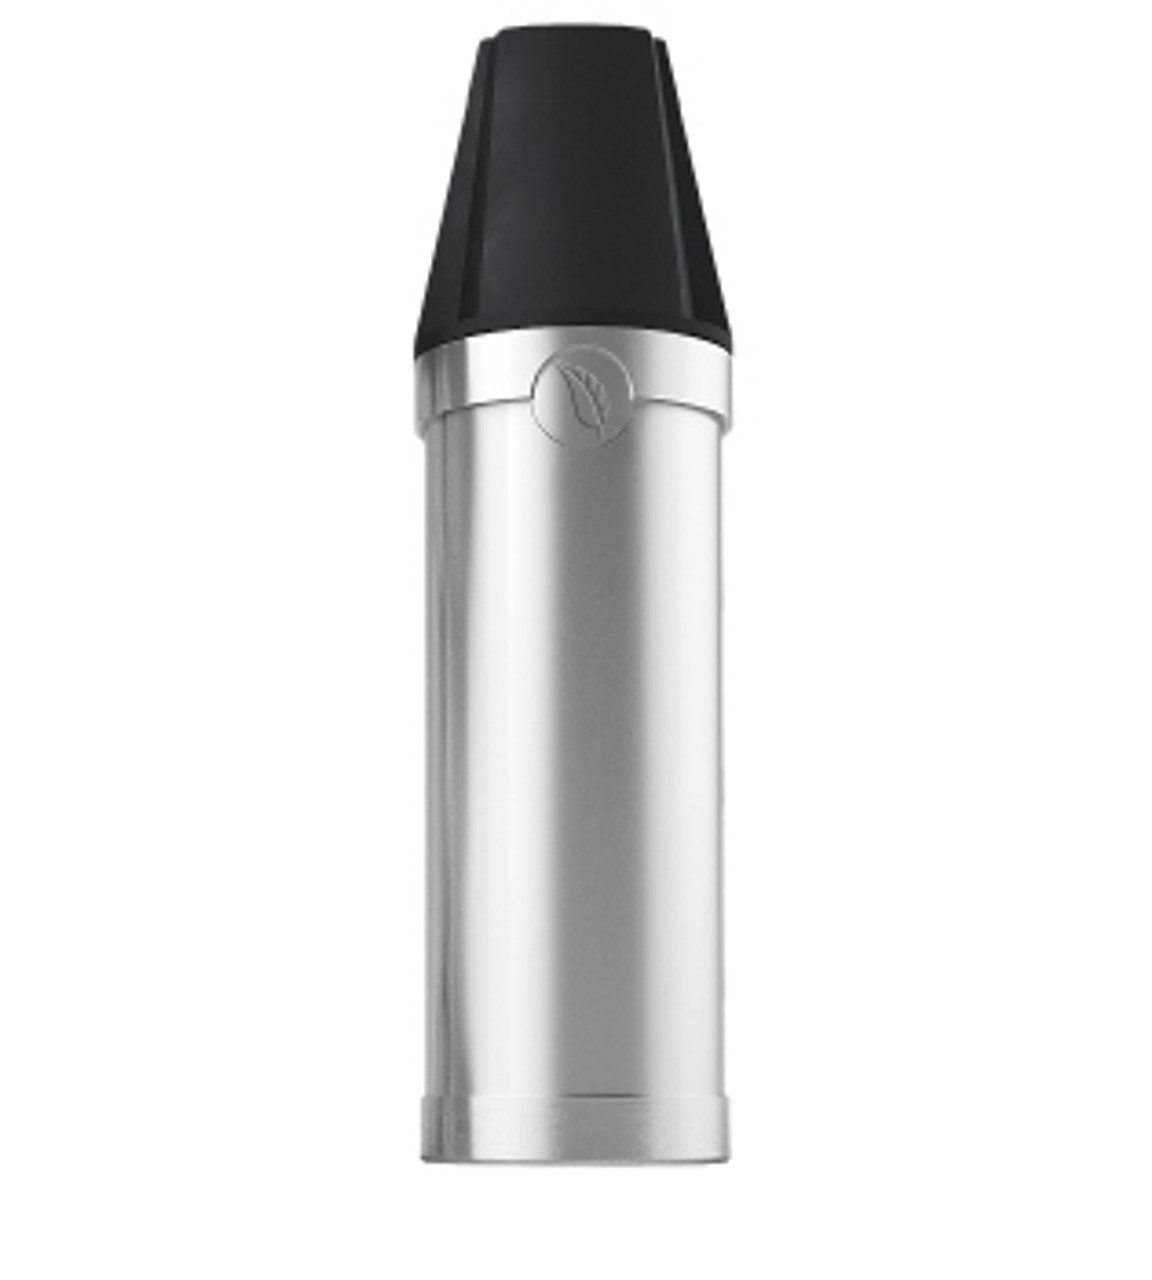 The V2 Pro Loose Leaf Cartridge designed for the V2 PRO 3 vape pen